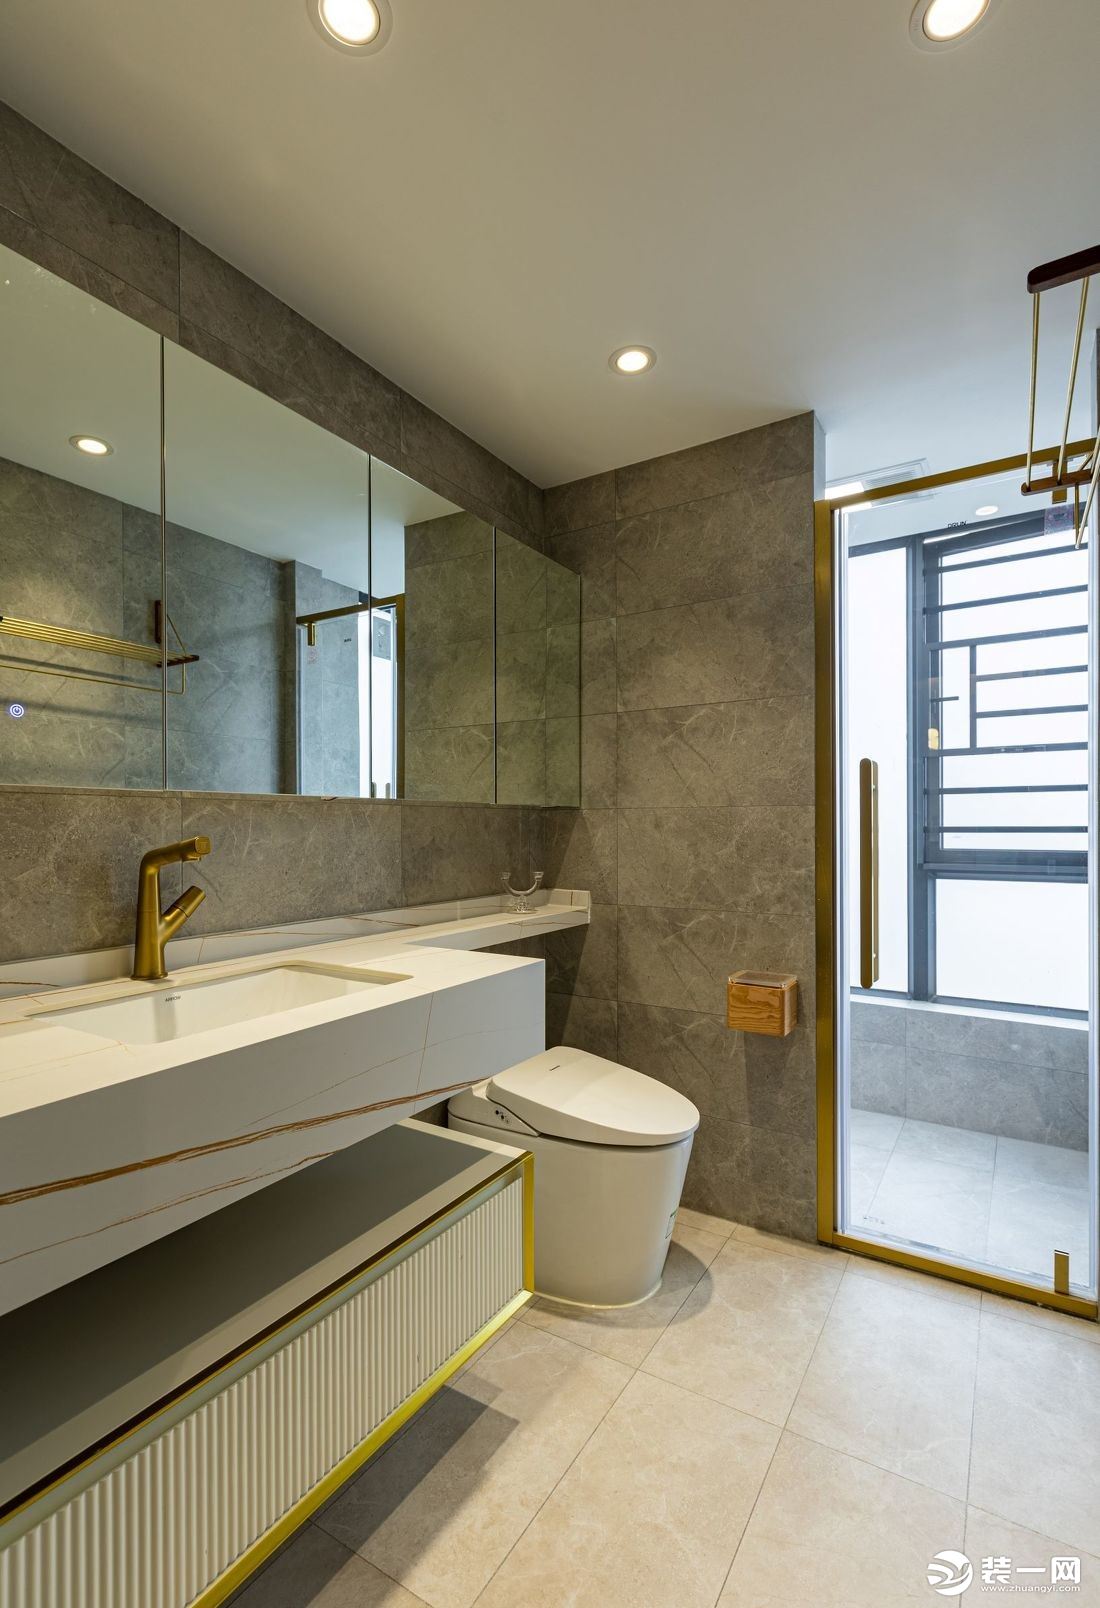 延长的镜柜和洗手台台面，小小的设计细节为空间增加了些储物空间。